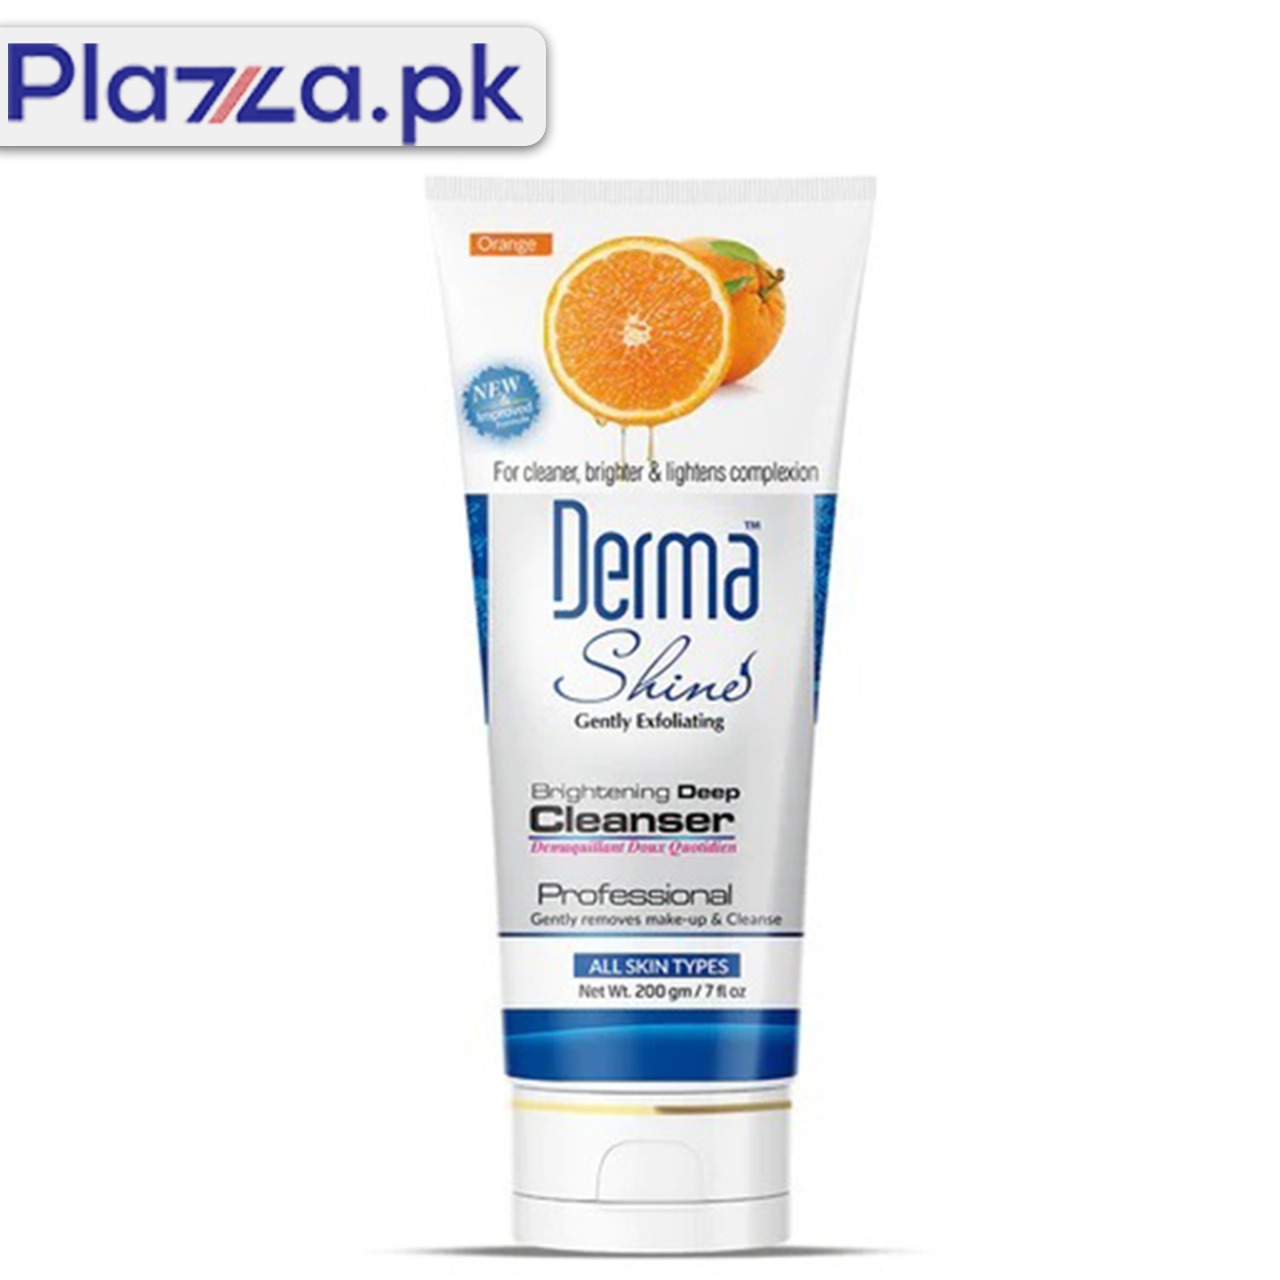 Derma Shine Brightening Deep Cleanser in Karachi